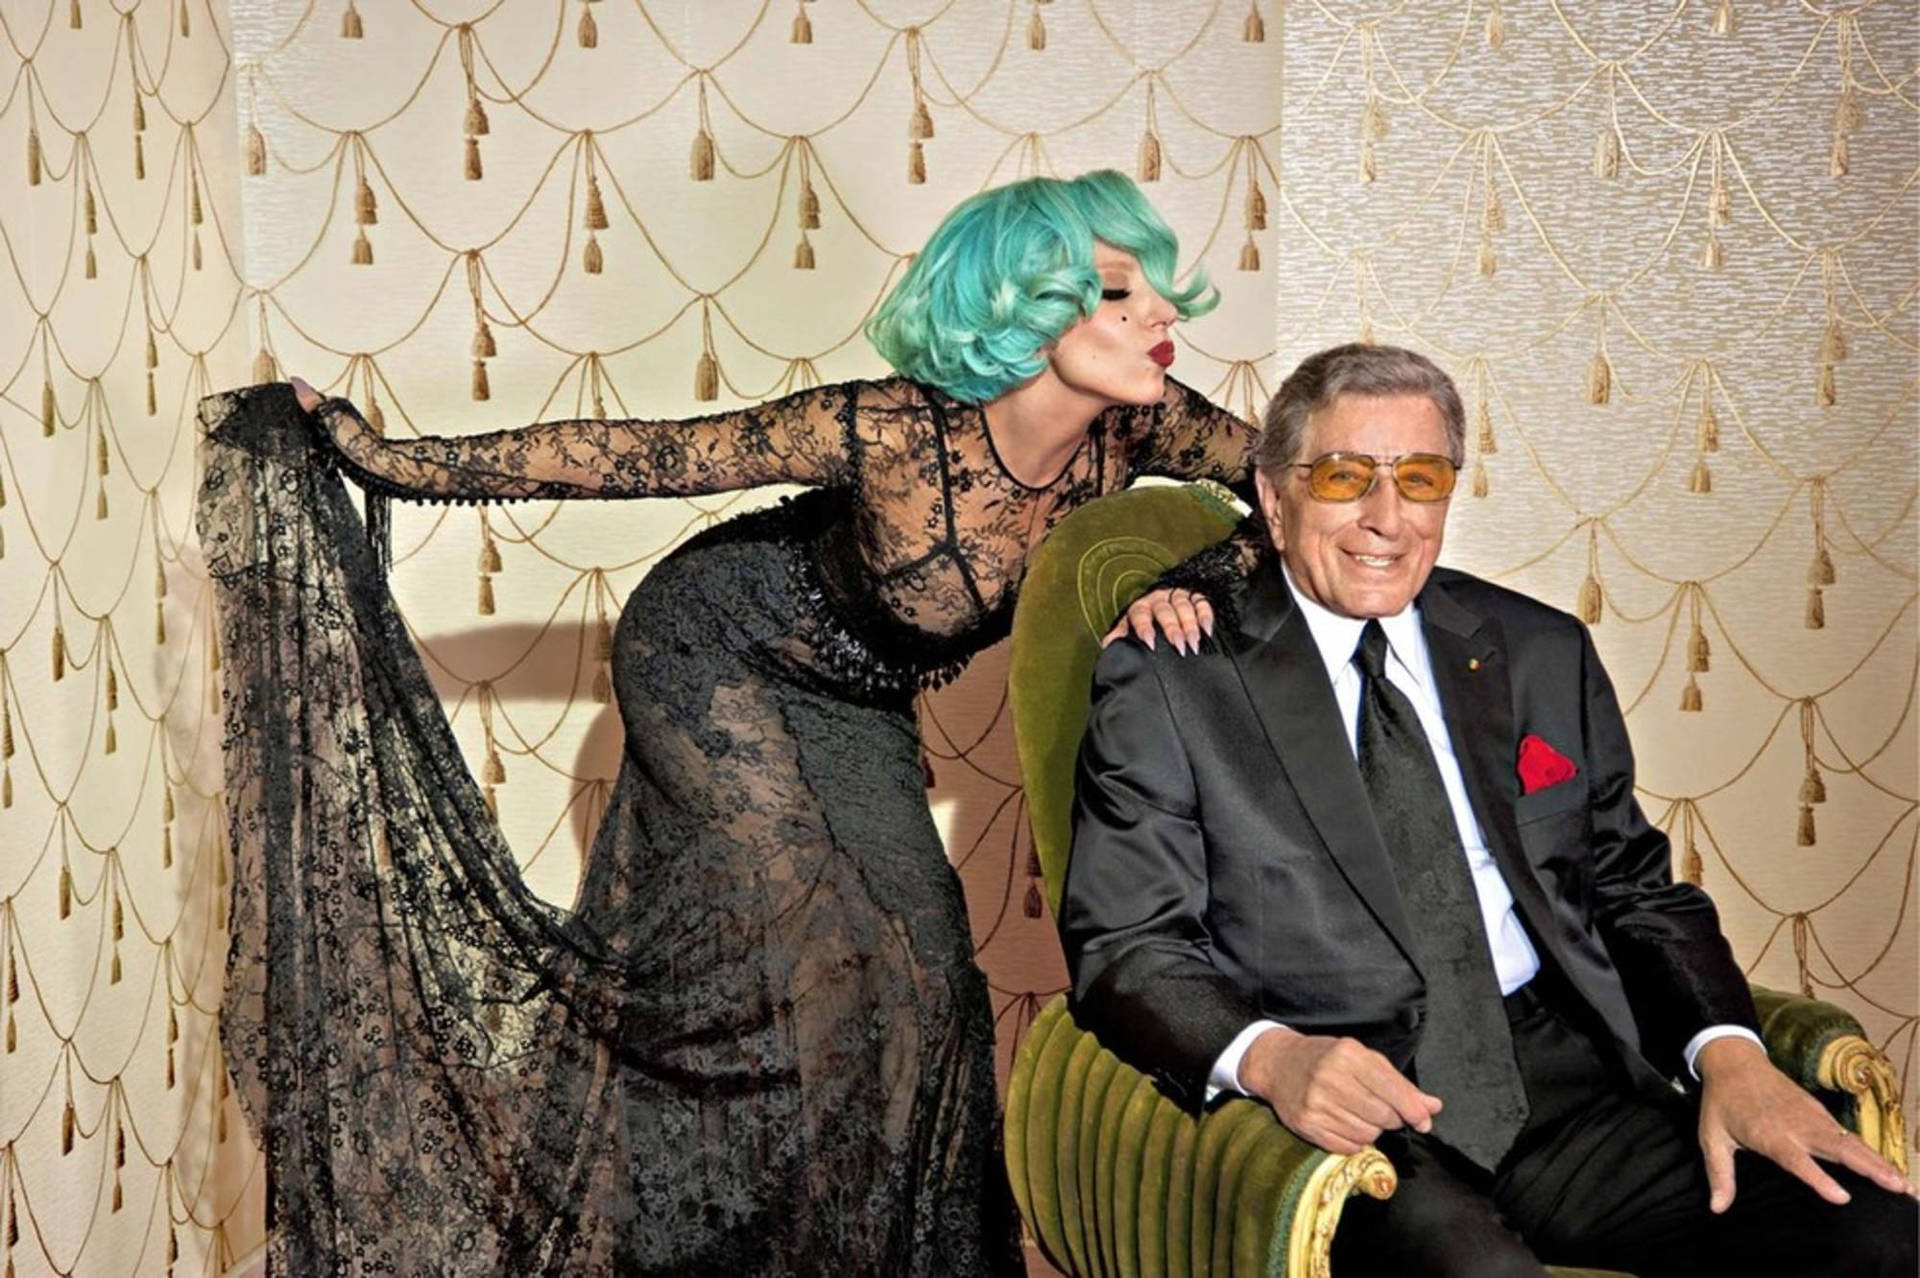 Lady Gaga And Tony Bennett Photoshoot Background